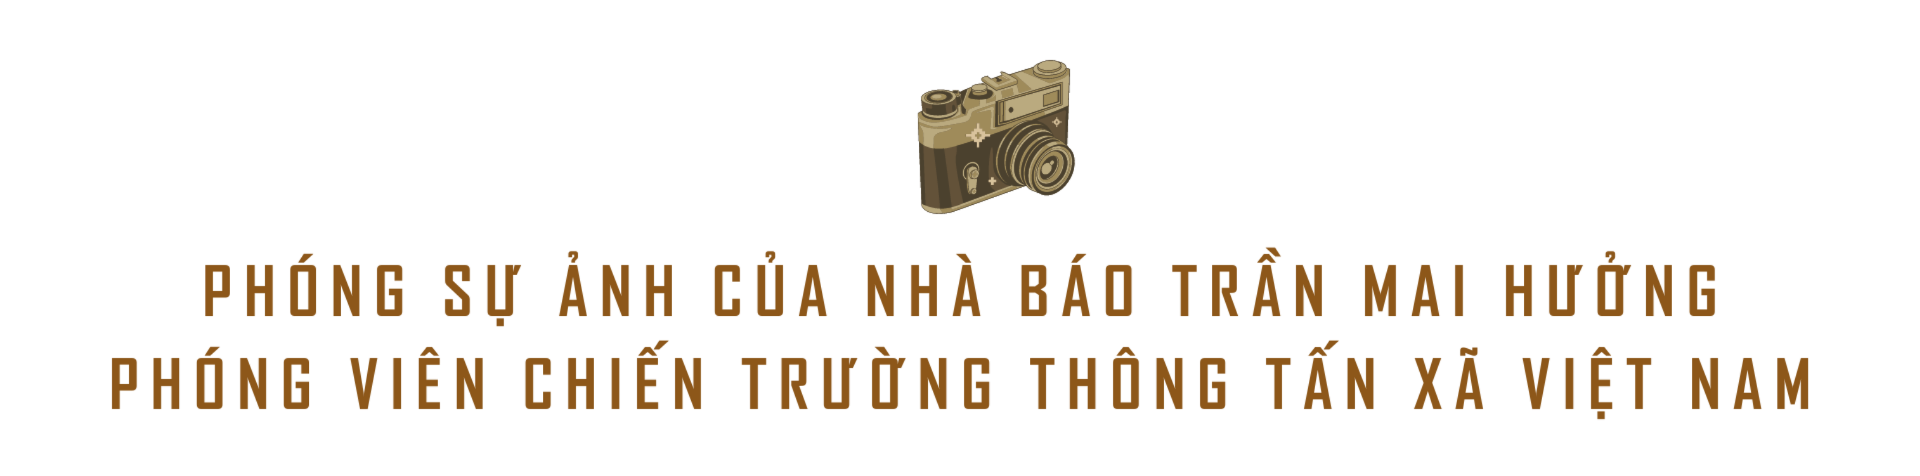 tit-phu-hanh-trinh-ve-nhung-nam-thang-xa-xanh-nb-tran-mai-huong-304-1920-x-1080-px-1920-x-600-px-1-(1).png